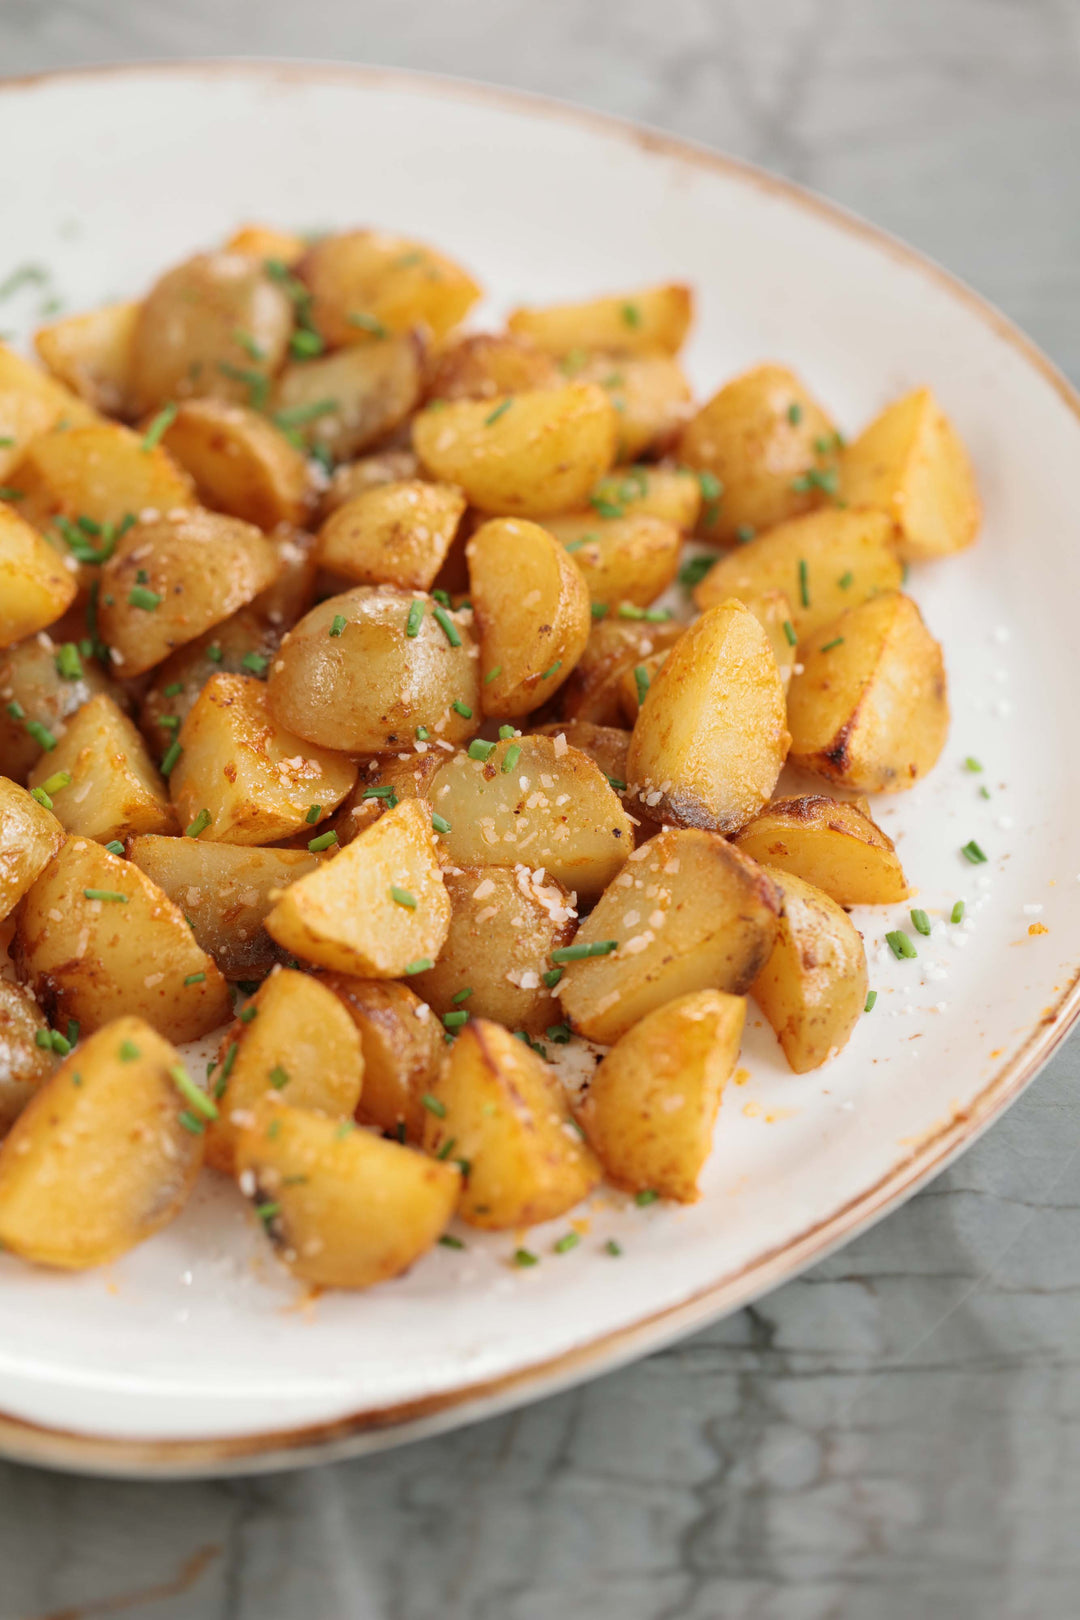 Chipotle Mayo Roasted Potato Wedges